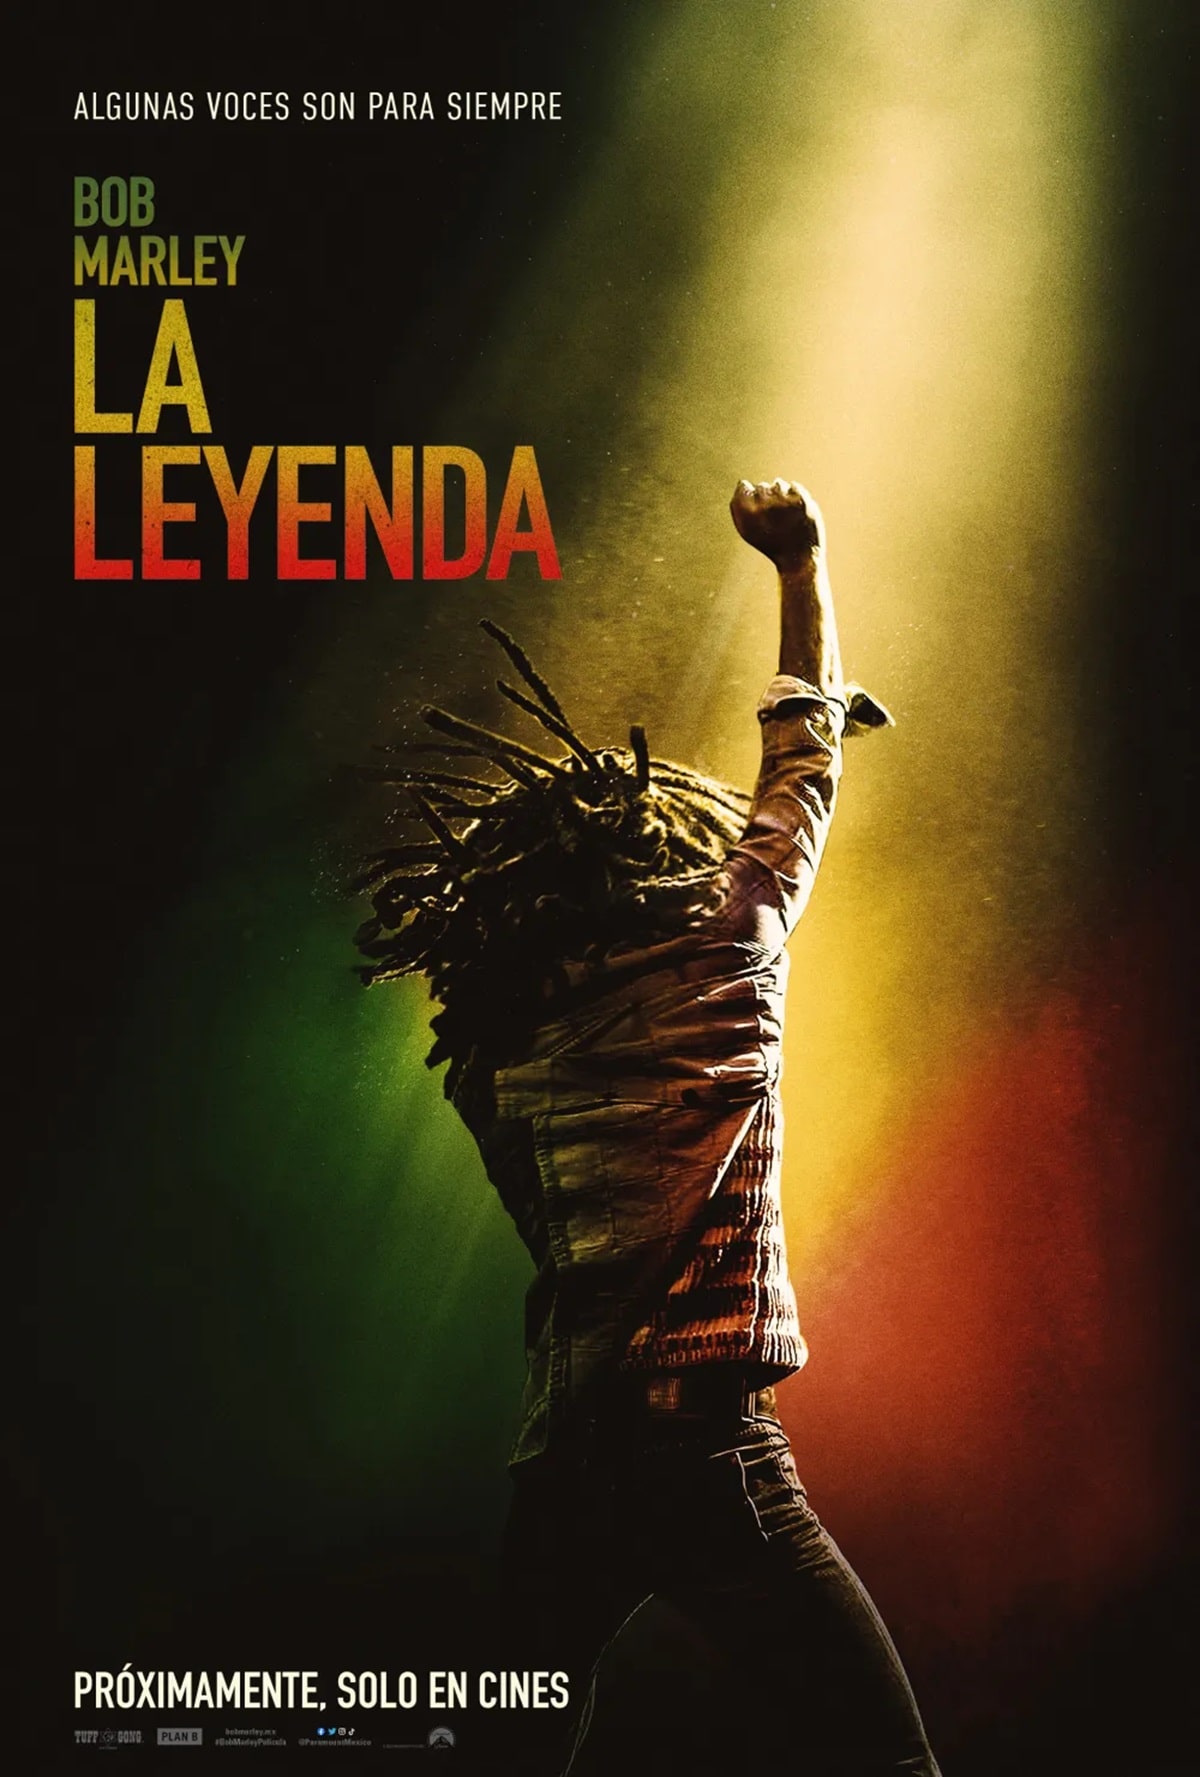 Póster de la película Bob Marley: La leyenda